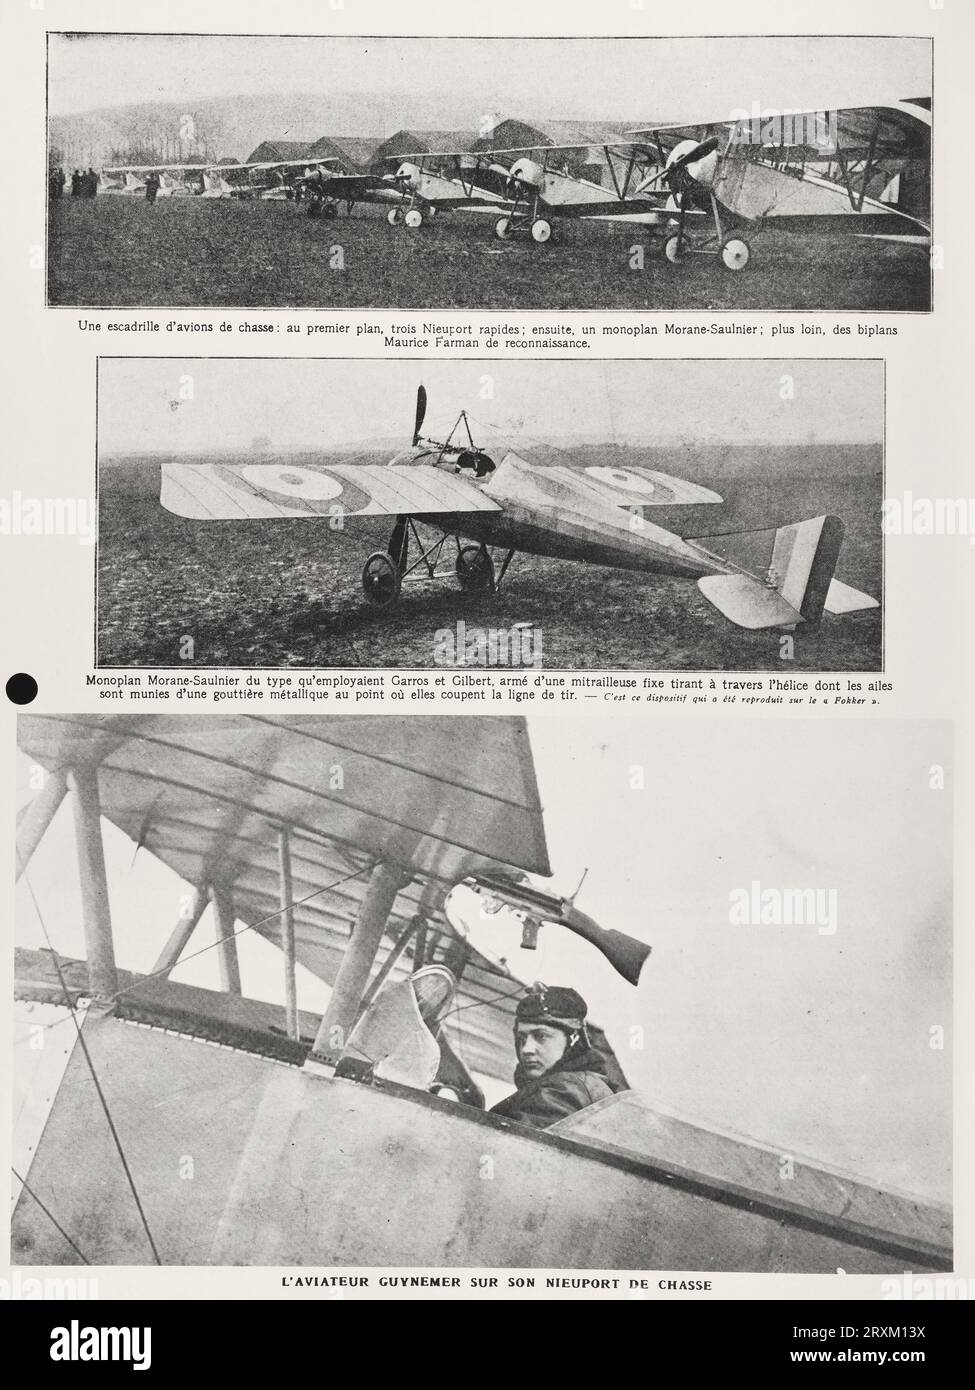 'Un escadron d'avions de chasse : au premier plan, trois Nieuports rapides ; puis, un monoplan Morane-Saulnier ; plus loin, biplans de reconnaissance Maurice Farman. Monoplan Morane-Saulnier du type utilisé par Garros et Gilbert, armé d'une mitrailleuse fixe tirant à travers l'hélice dont les ailes sont munies d'une gouttière métallique à l'endroit où elles coupent la ligne de tir. AVIATOR GUYNEMER SUR SON CHASSEUR NIEUPORT « une escadrille d'avions de chasse : au premier plan, trois Nieuports rapides ; puis, un monoplan Morane-Saulnier ; plus loin, des biplans de reconnaissance Maurice Farman. Banque D'Images